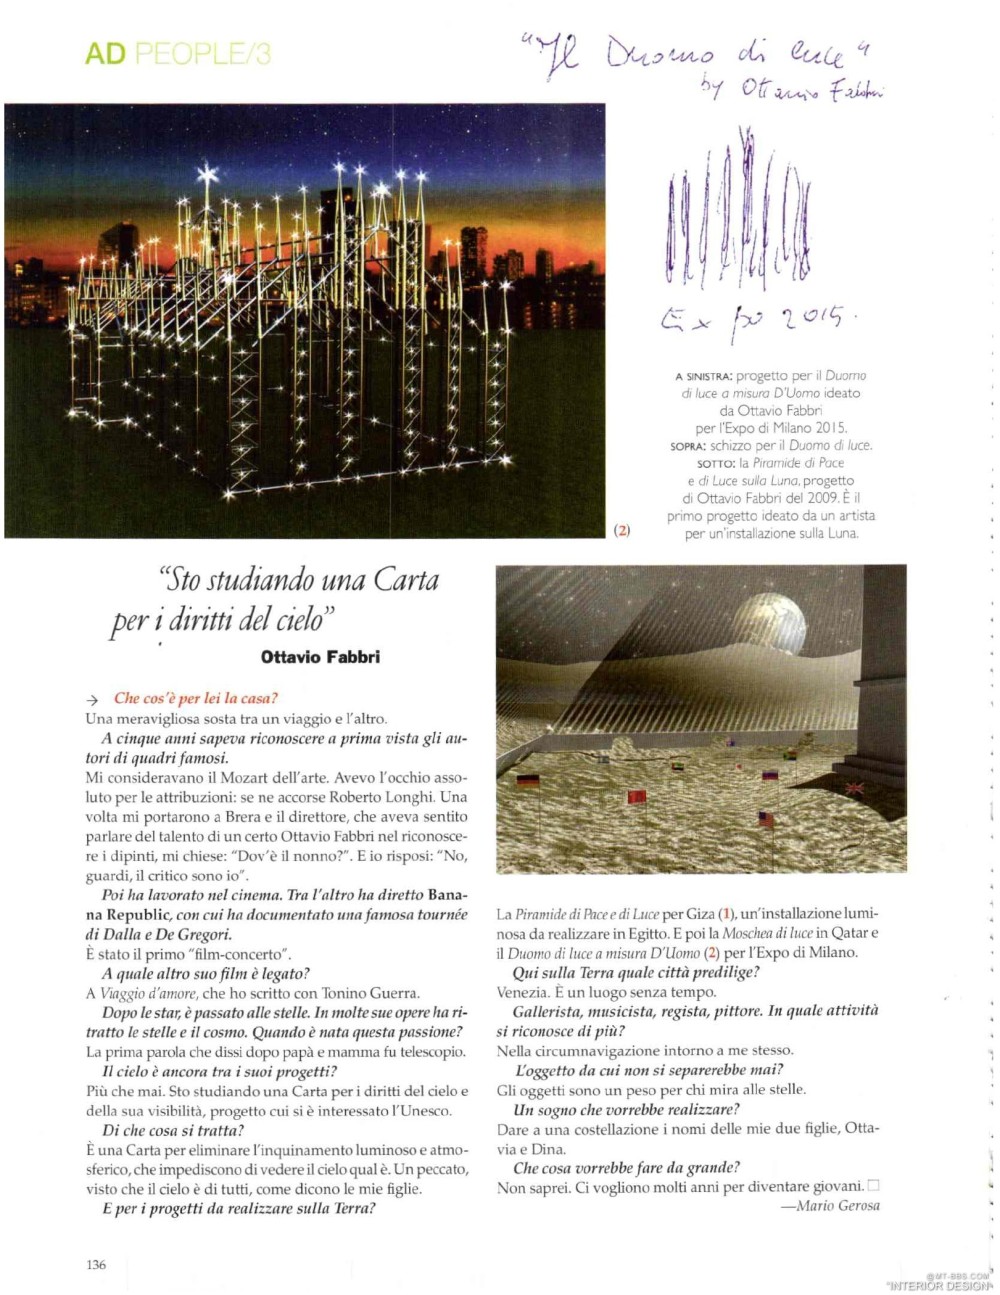 意大利AD 杂志 2012年全年JPG高清版本 全免（上传完毕）_0138.jpg